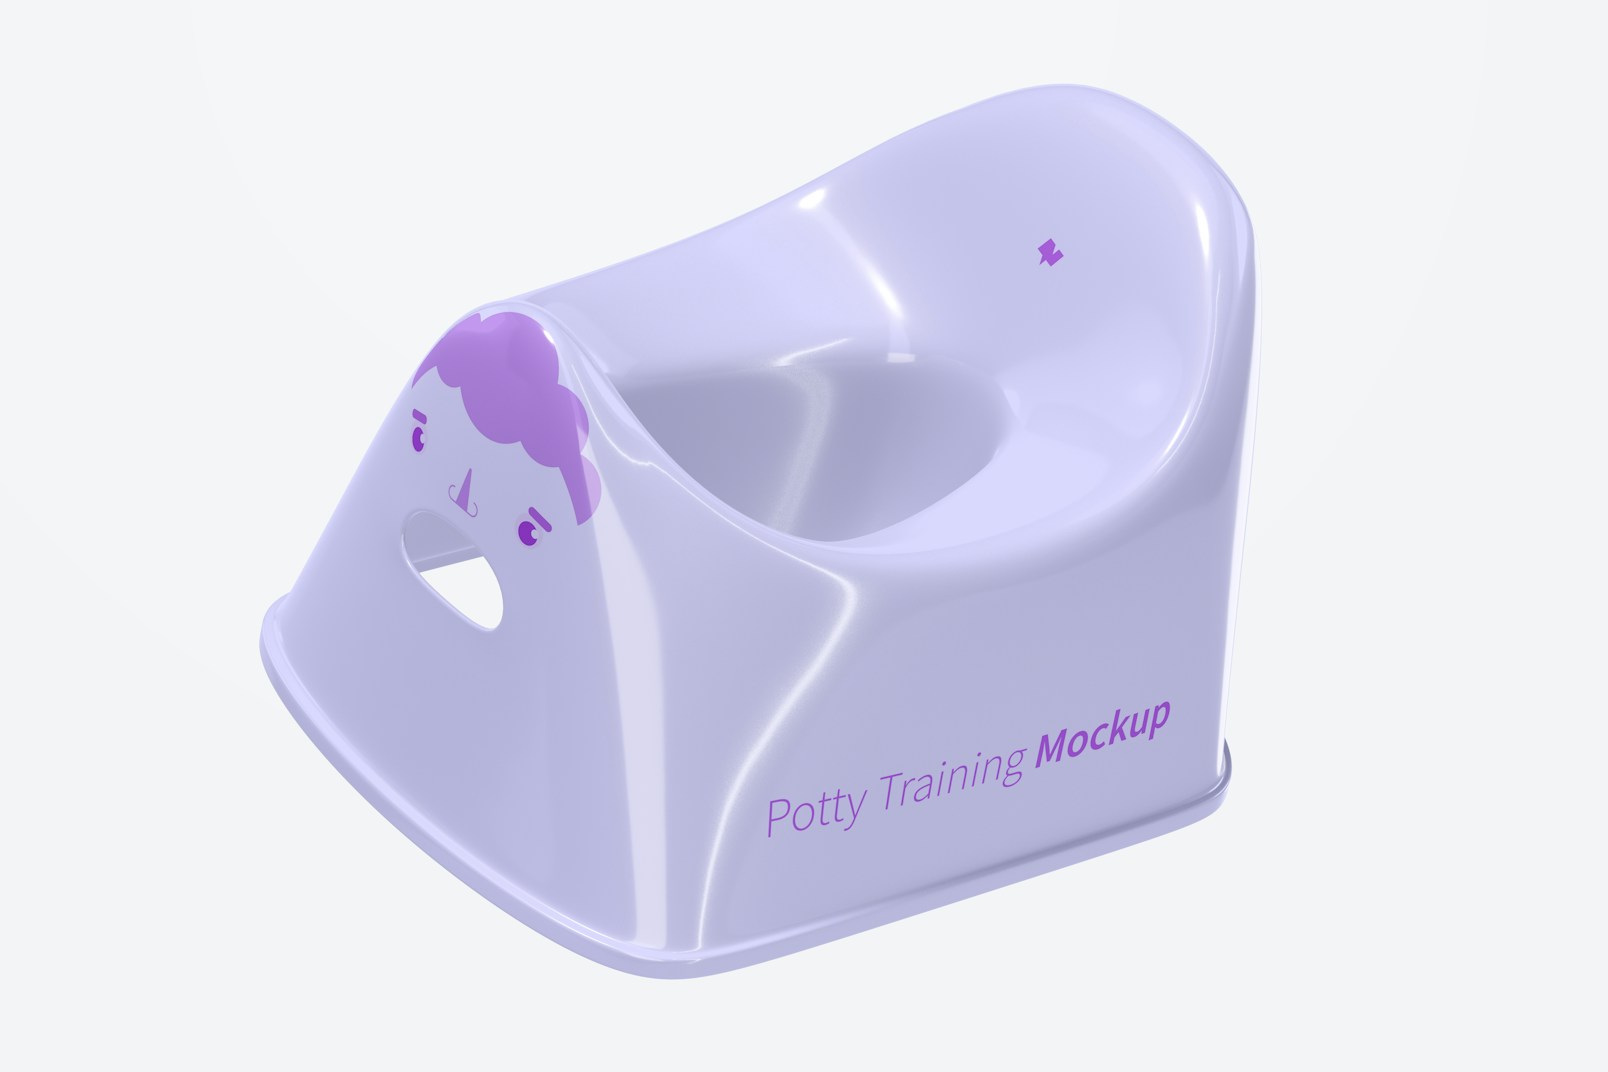 Potty Training Mockup, Floating